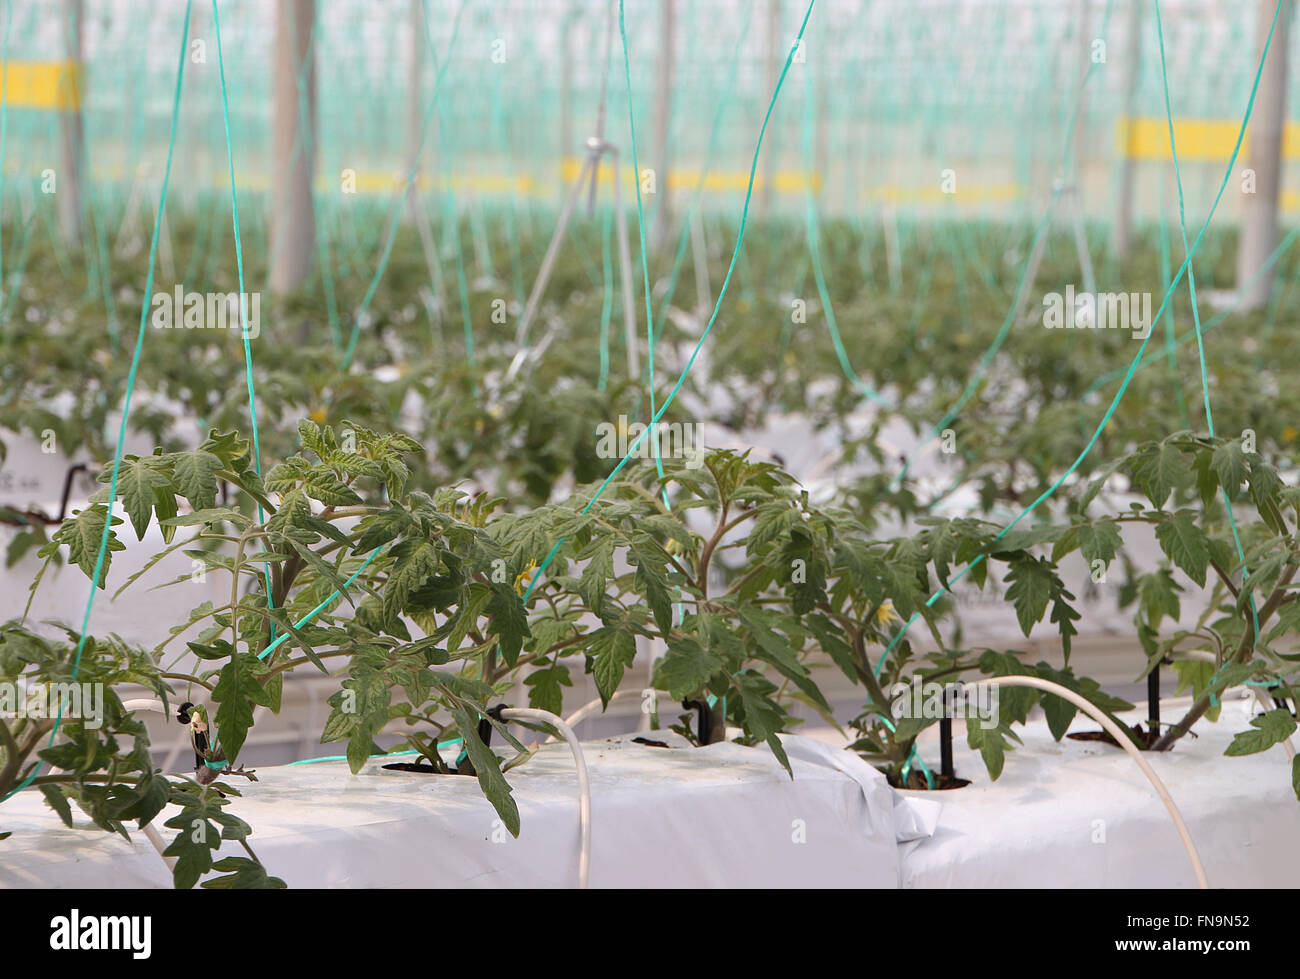 Las plantas de tomate creciendo dentro de un invernadero Foto de stock